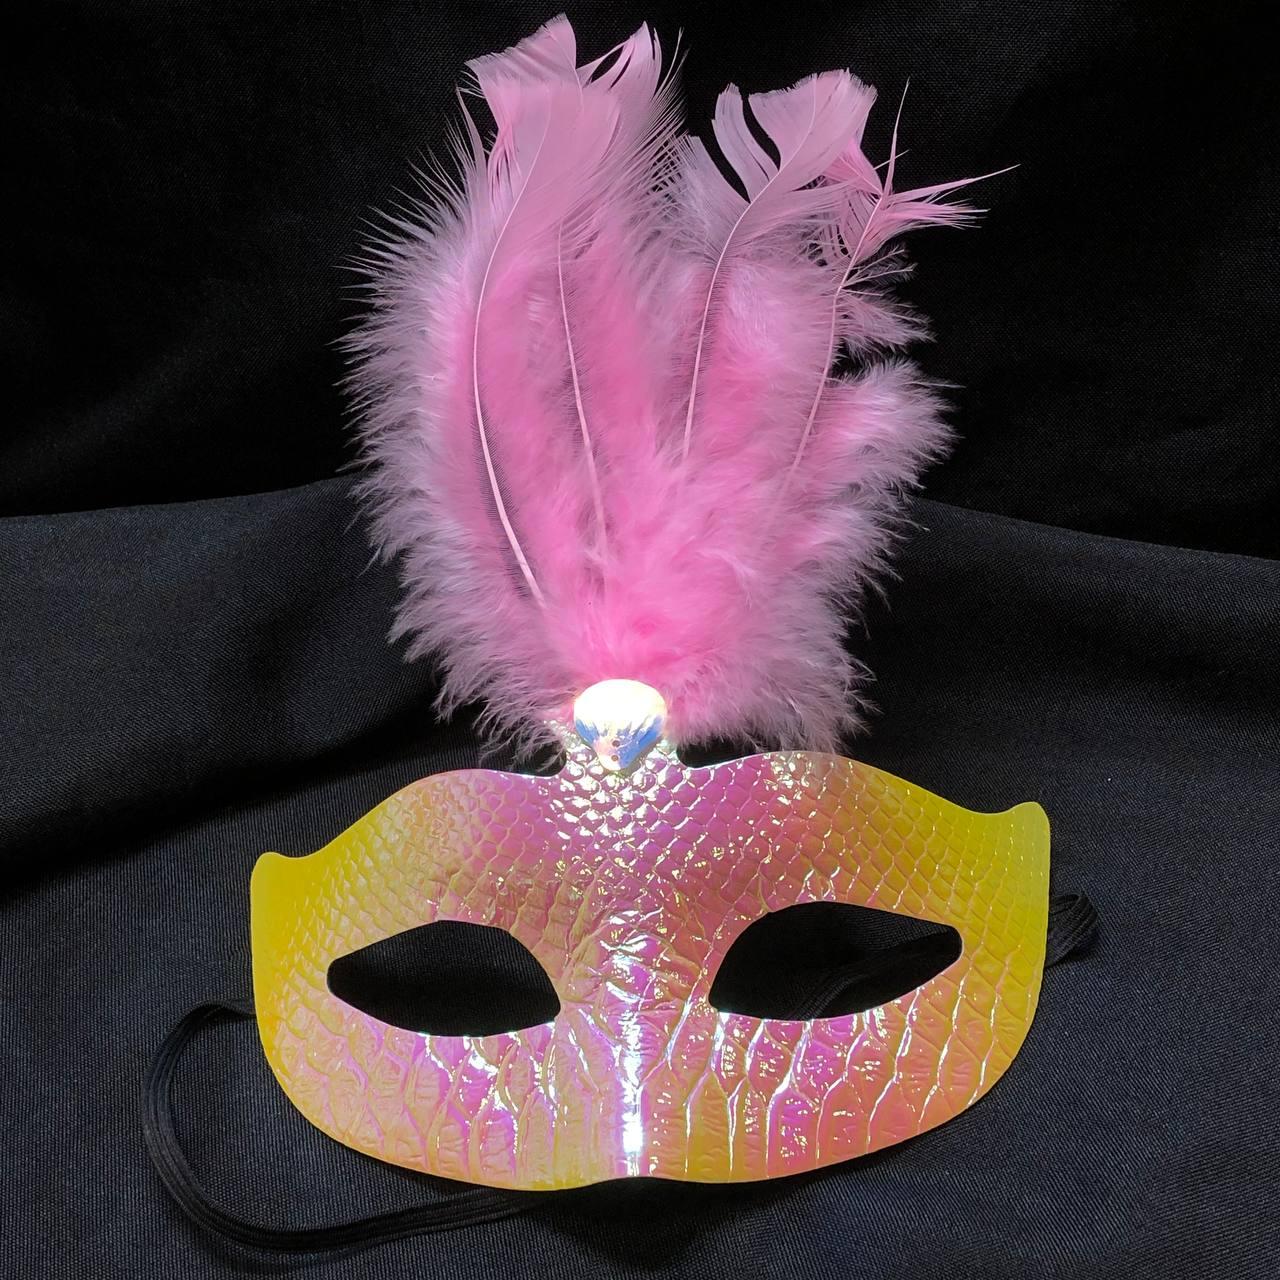 Венецианская маска переливающаяся с перьями розовый хамелеон, фото 1